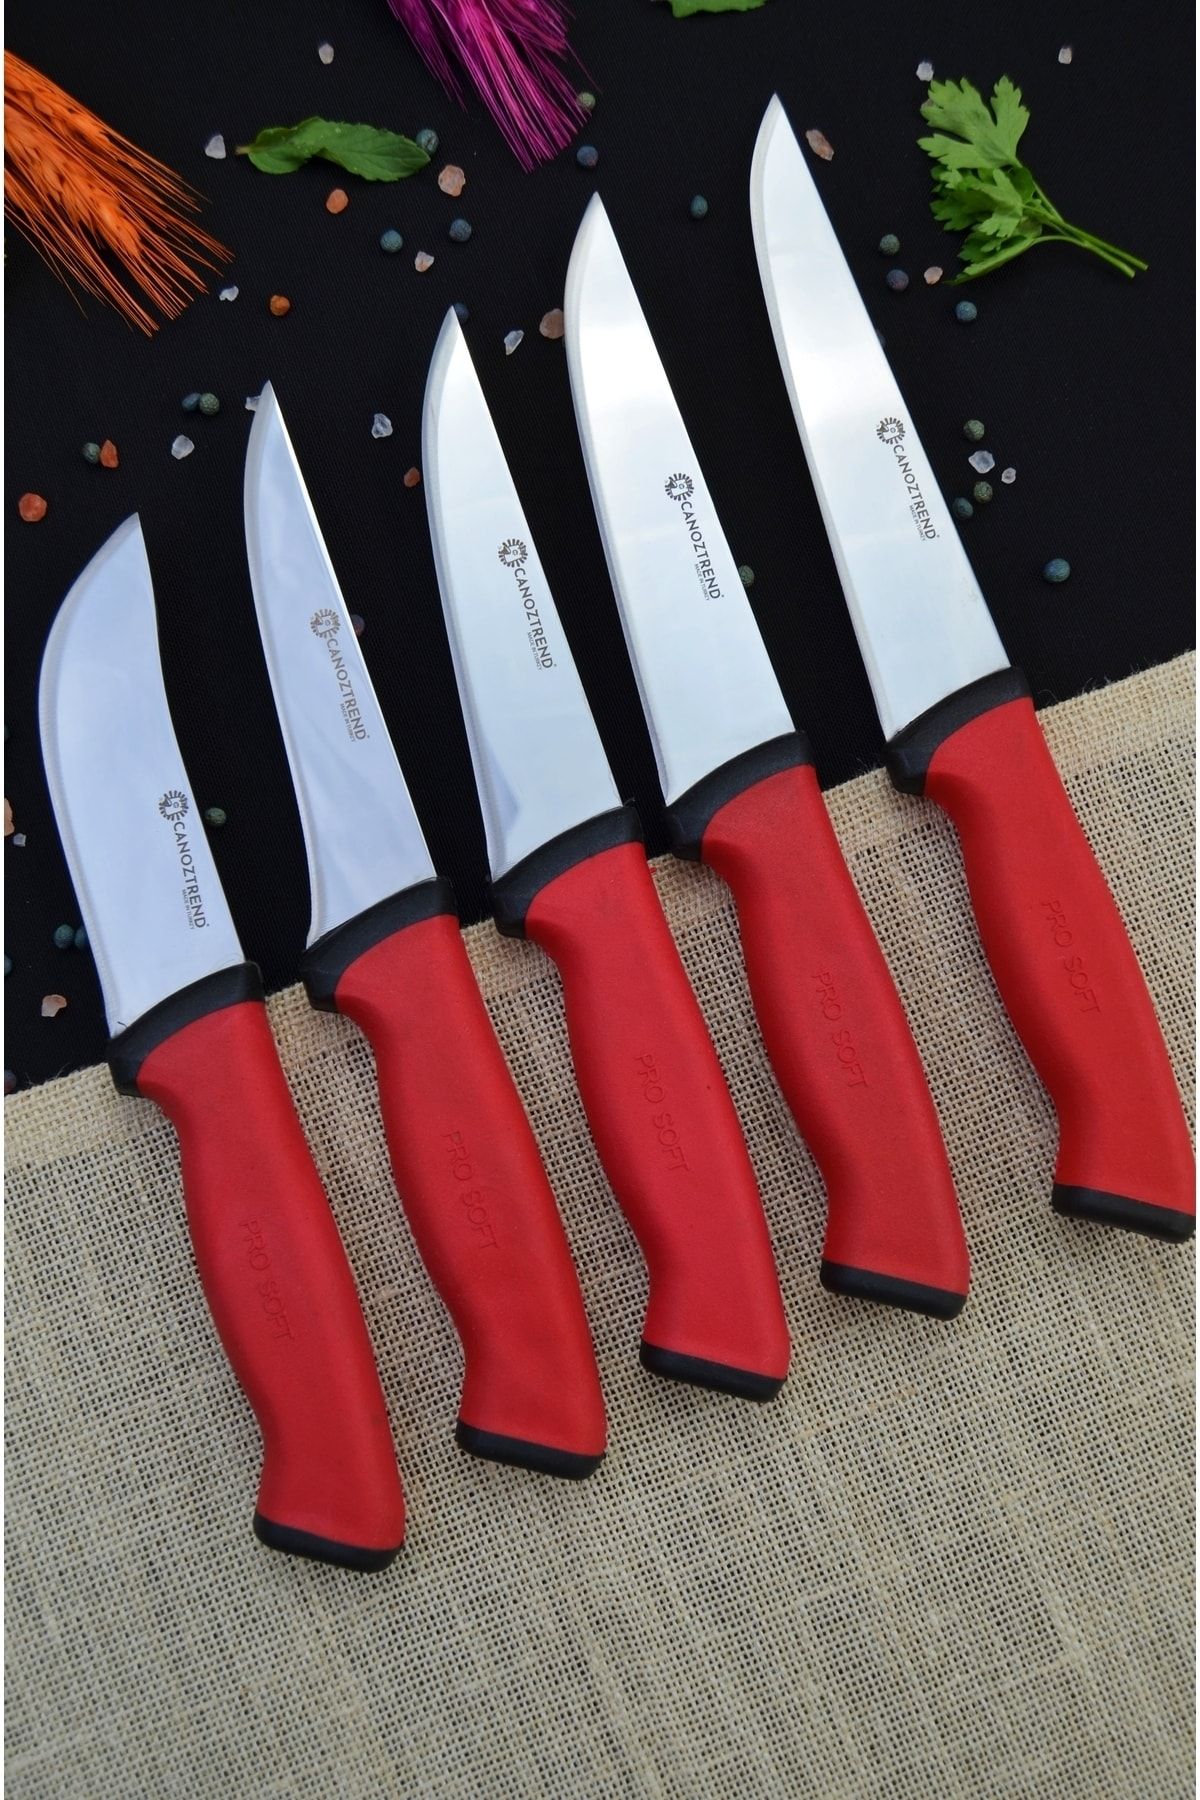 CANOZTREND El Yapımı Kırmızı Detaylı 5'li Muftak Bıçak Seti Kasap Seti Zırh Et Ekmek Meyve Sebze Bıçak Seti